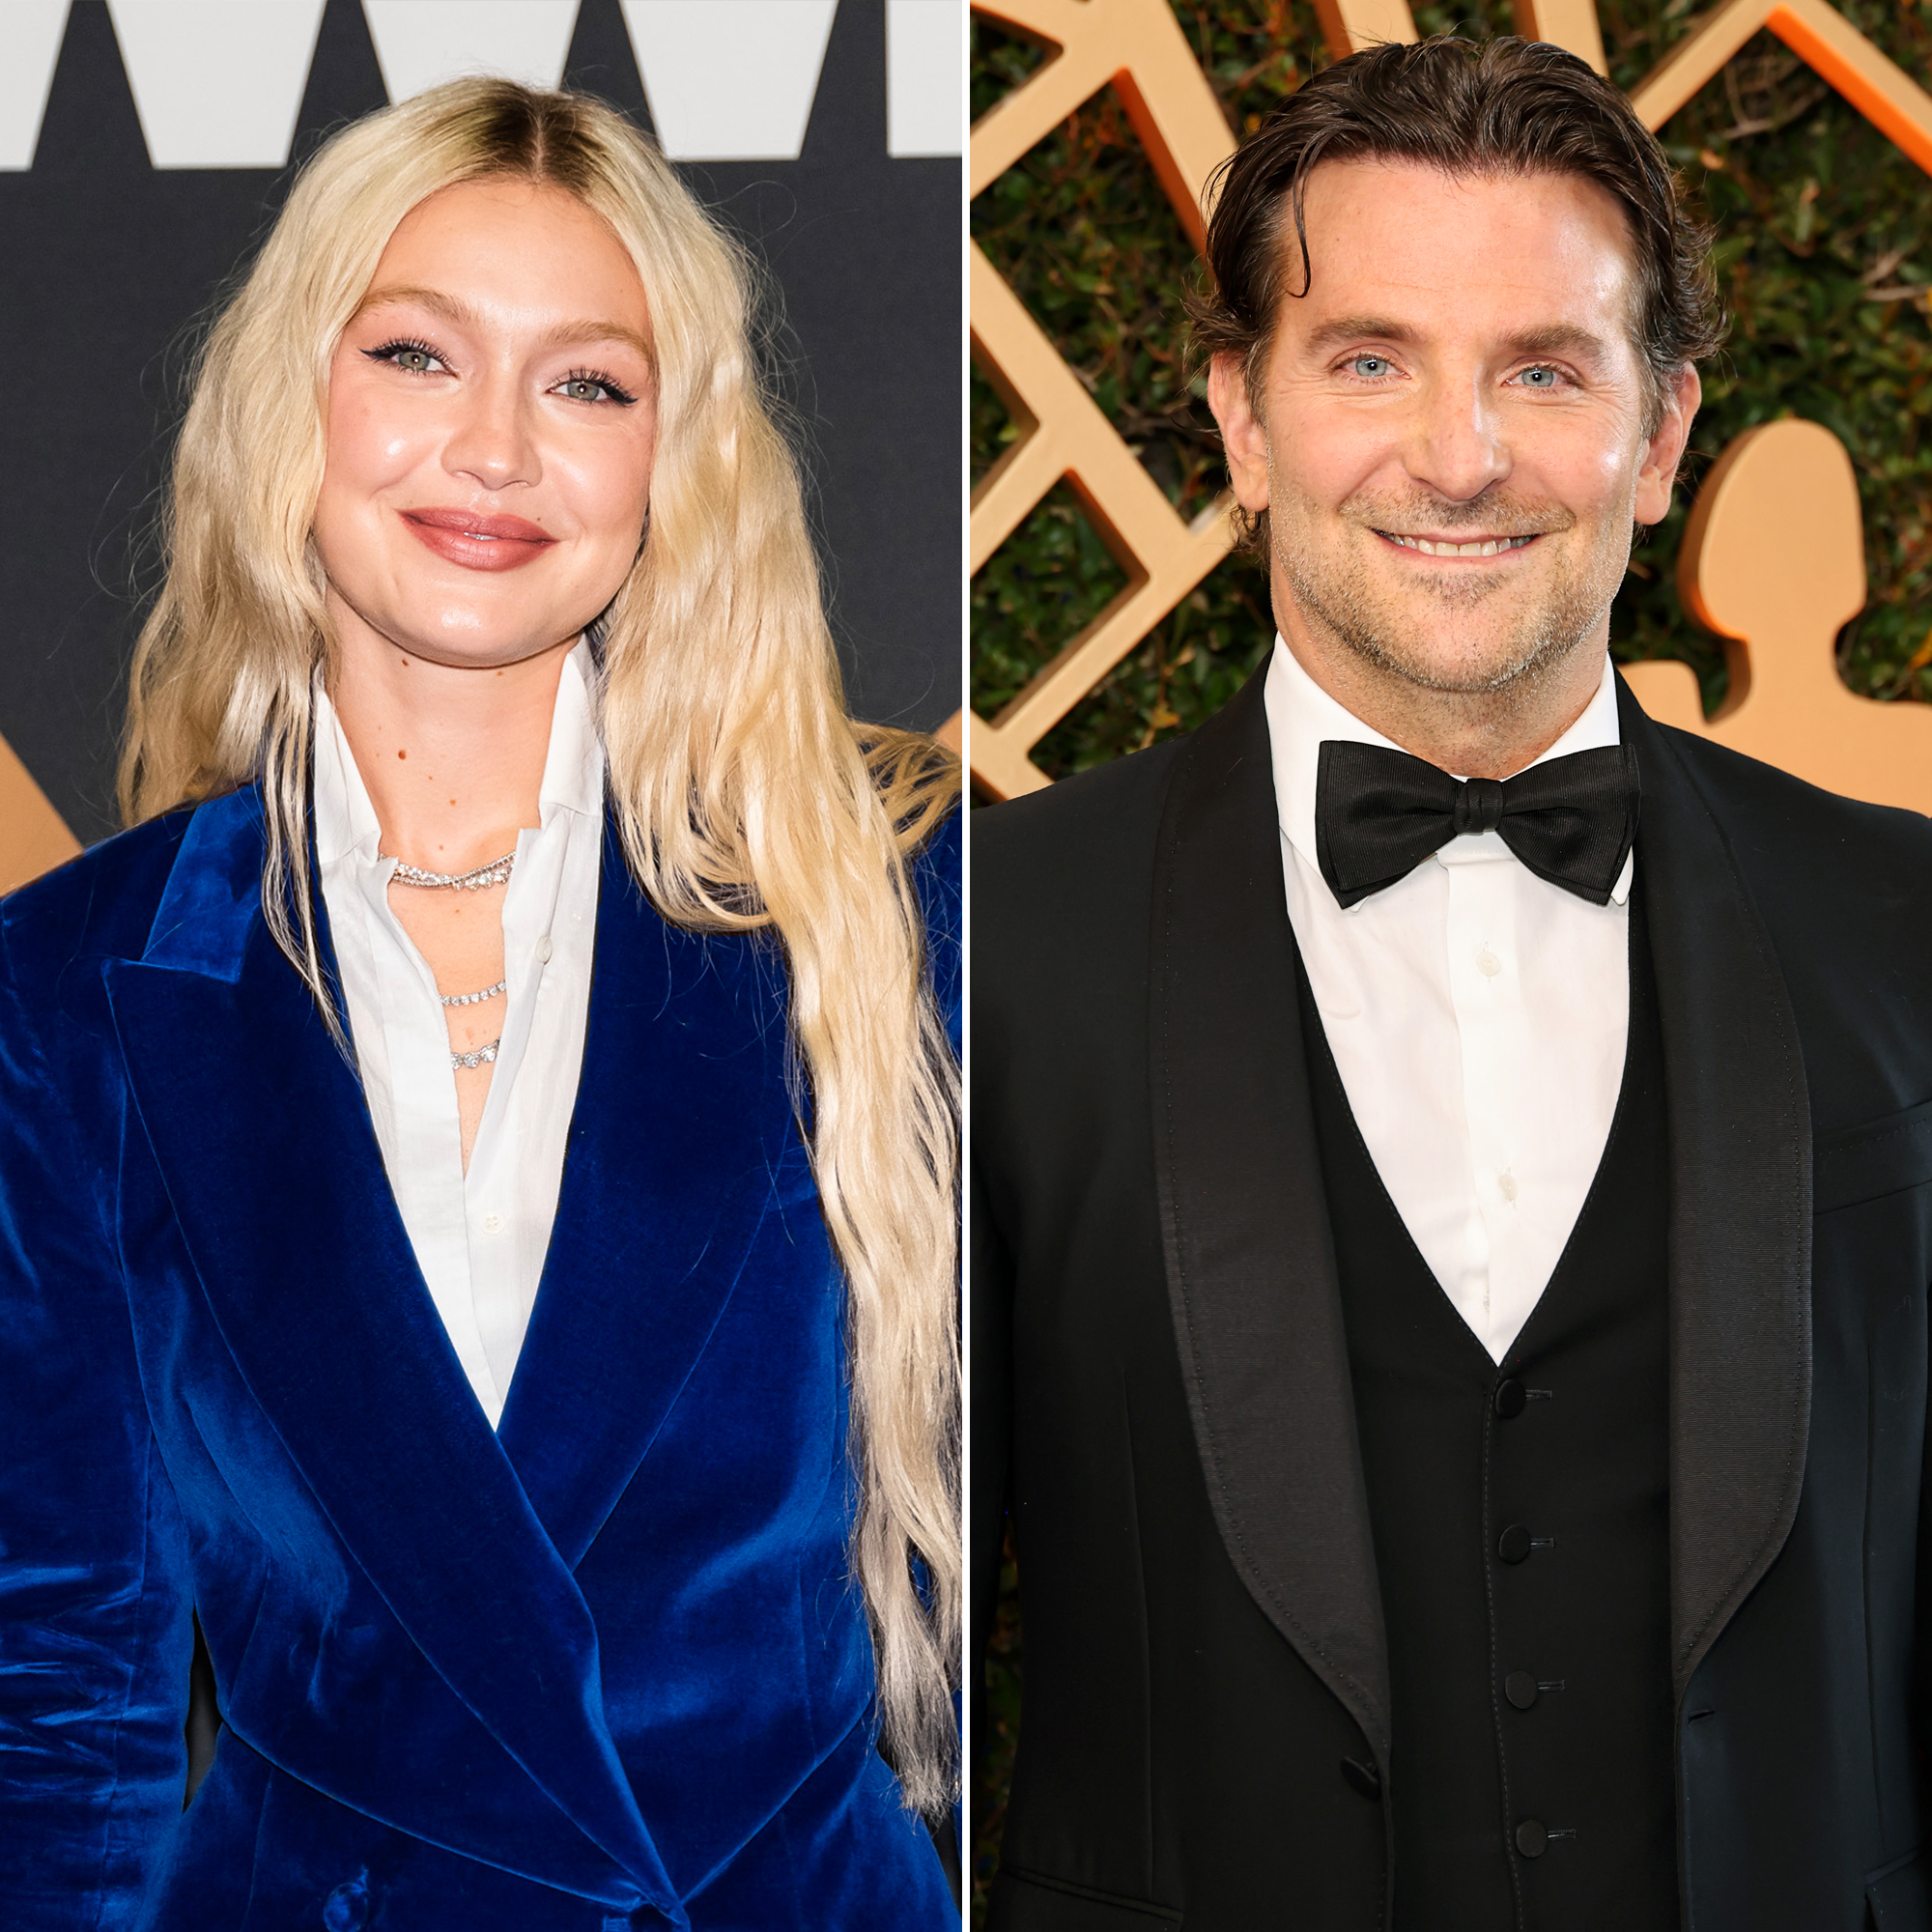 Gigi Hadid and Bradley Cooper 'Have a Lot in Common' Despite Age Gap